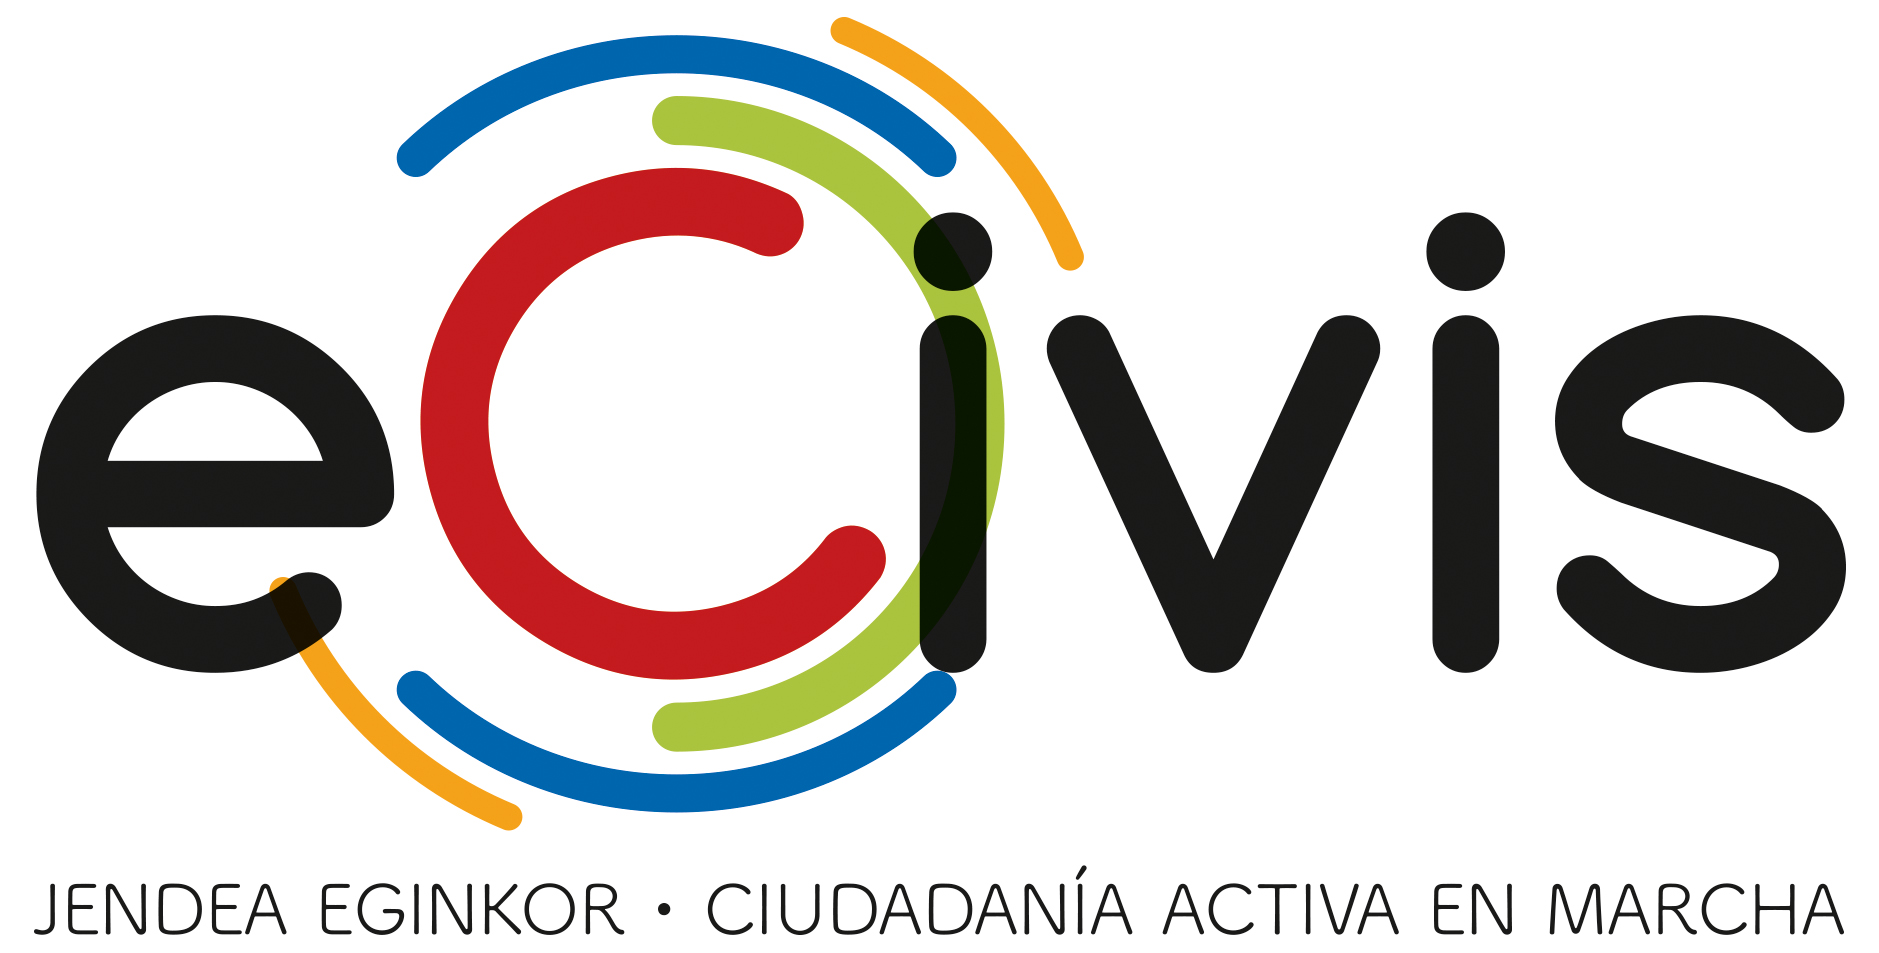  eCivis, asociación para la promoción de la ciudadanía activa